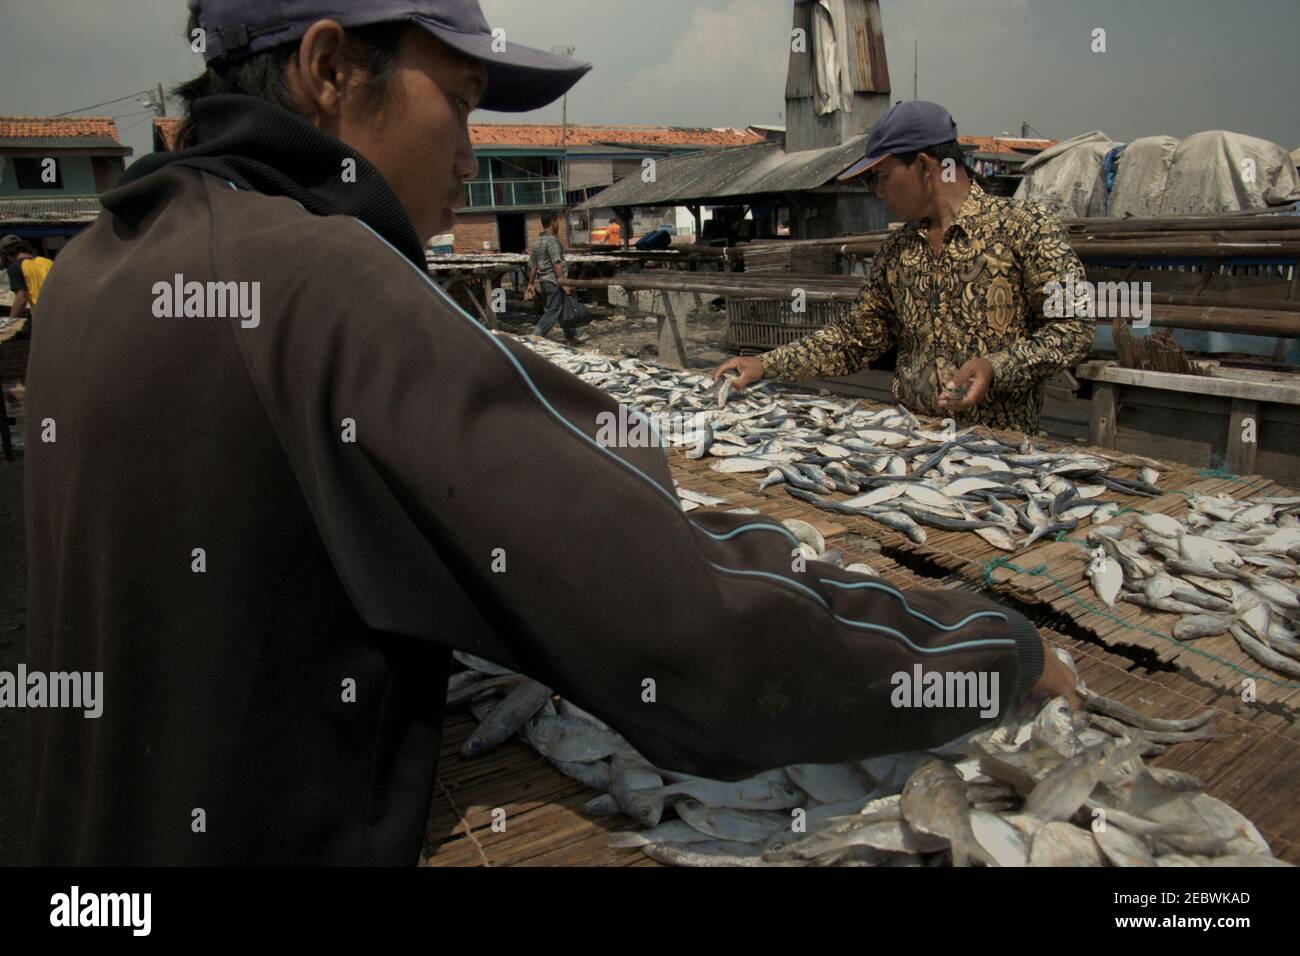 Zone de production de poissons salés à Muara Angke, un village de pêcheurs de la zone côtière de Jakarta, en Indonésie. Banque D'Images